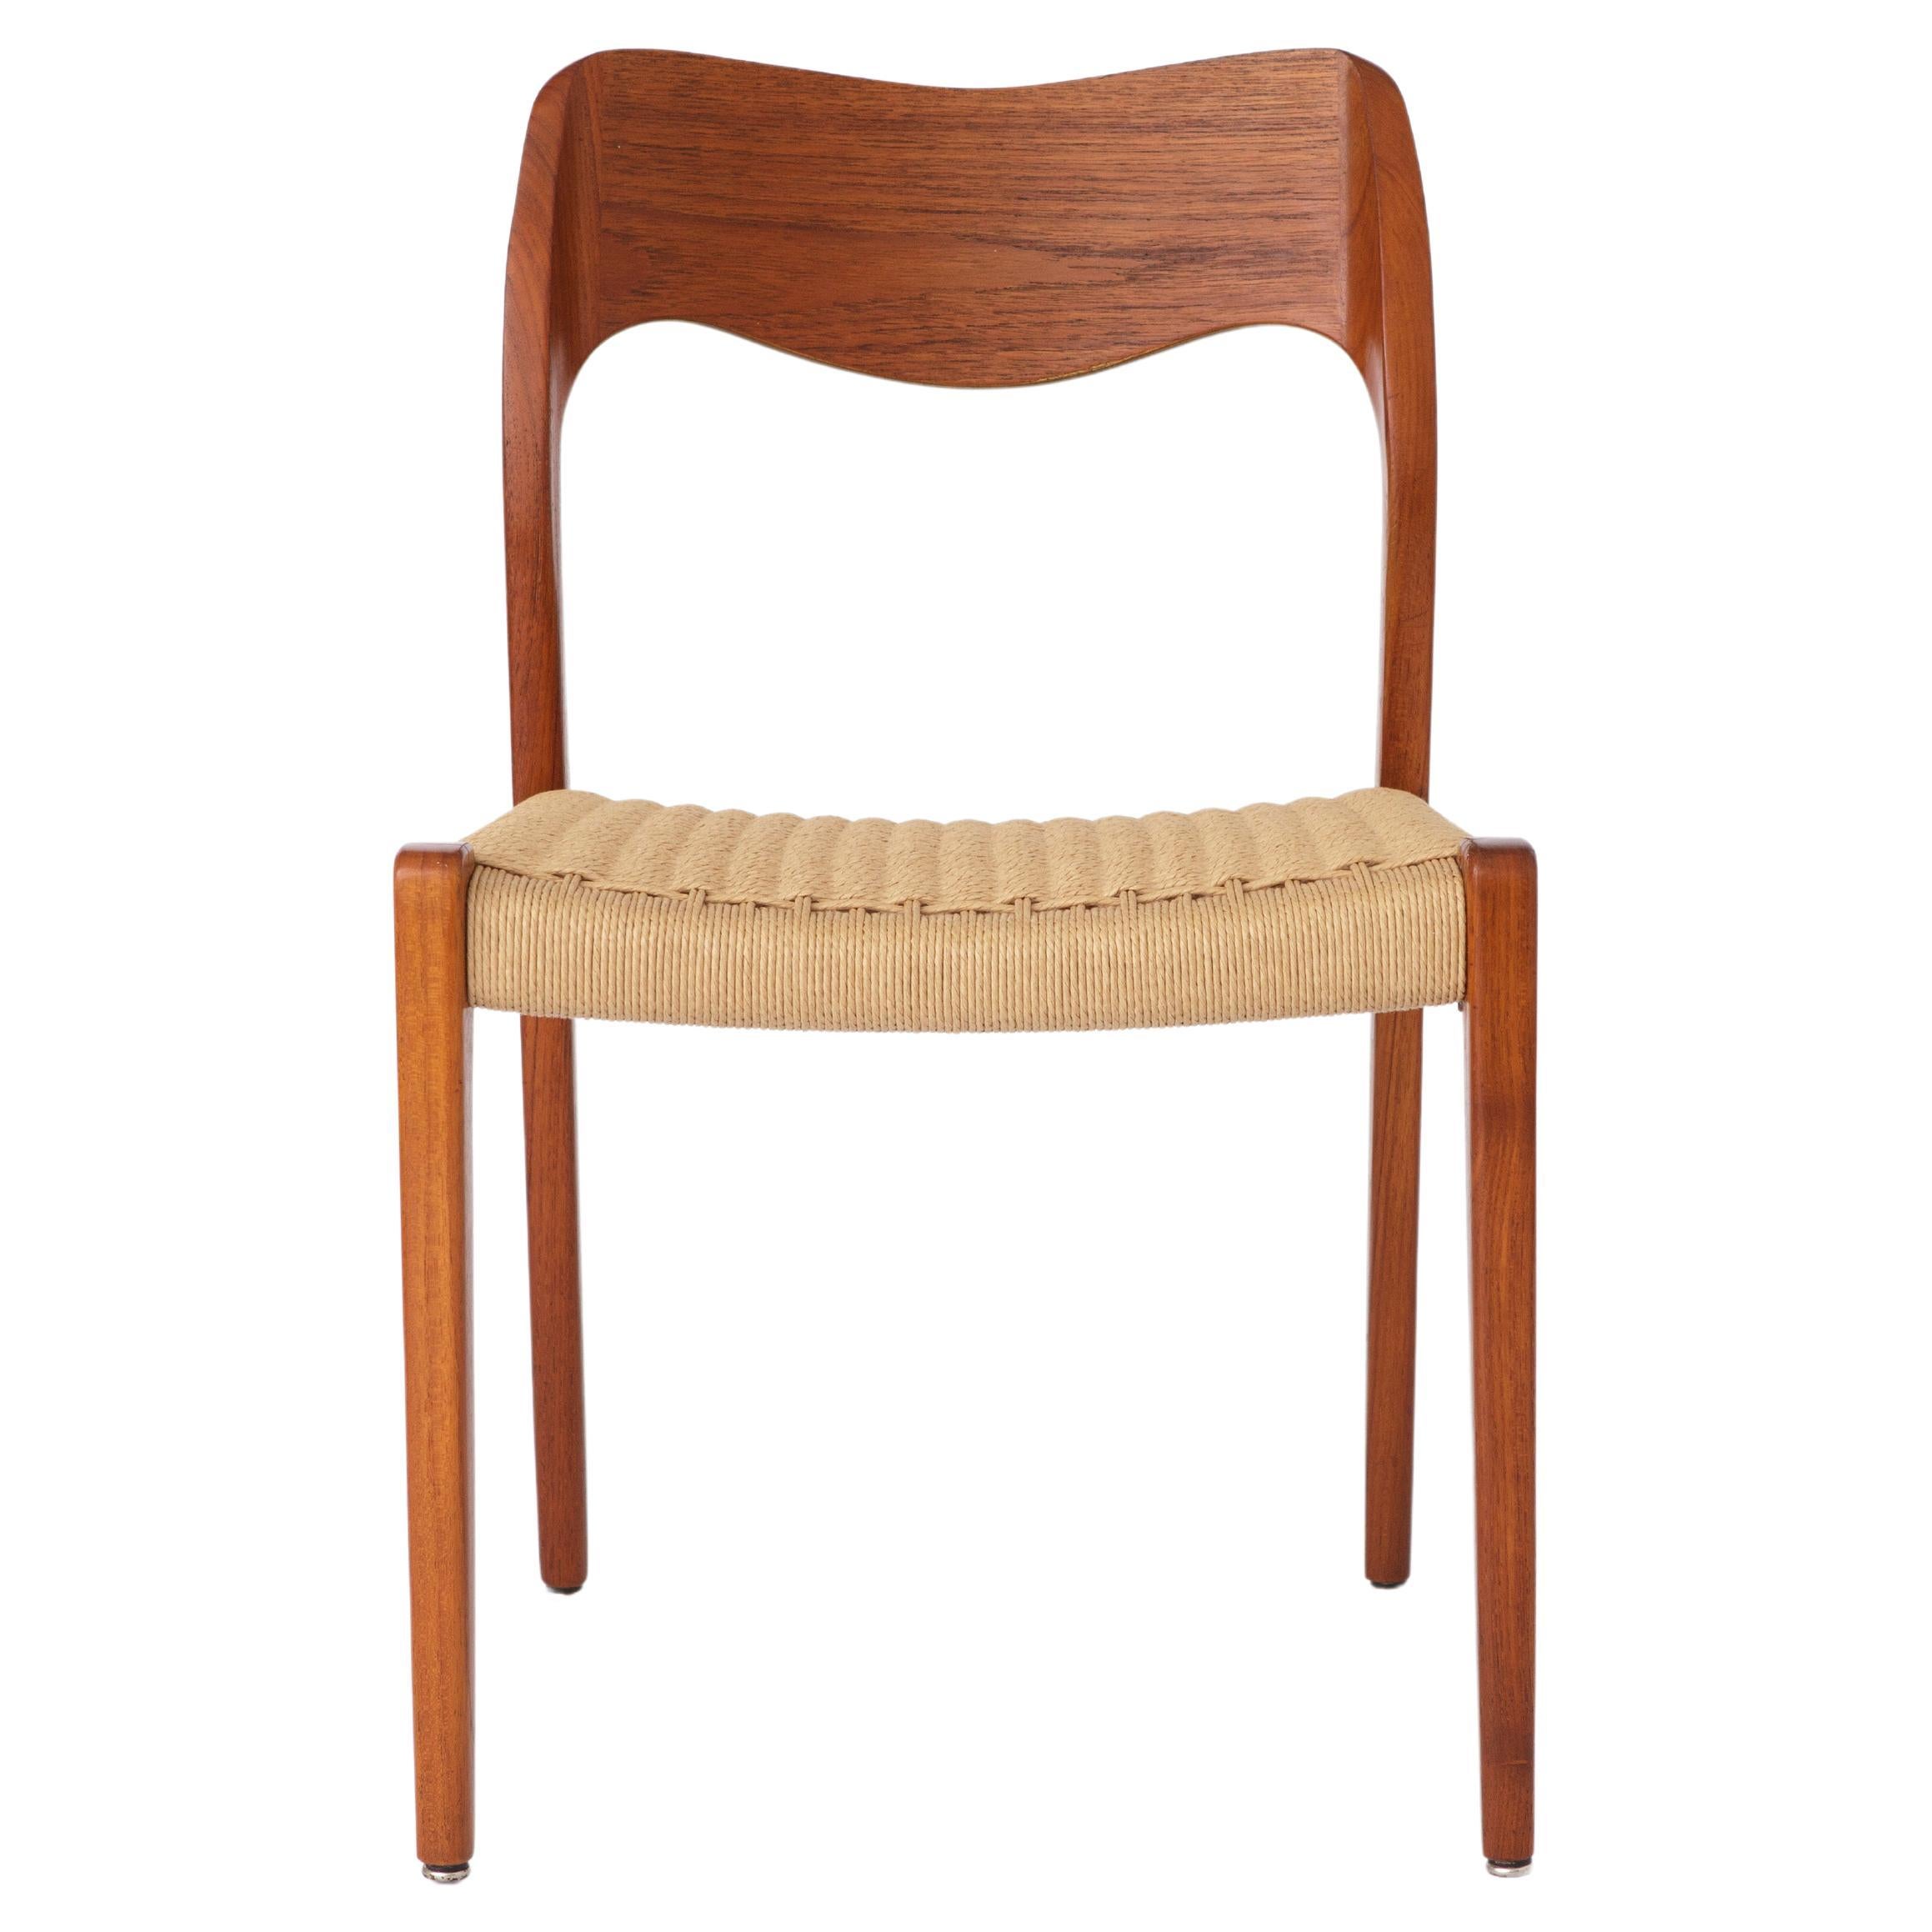 Niels Moller Chair, Model 71, 1950s Vintage Teak - Repaired